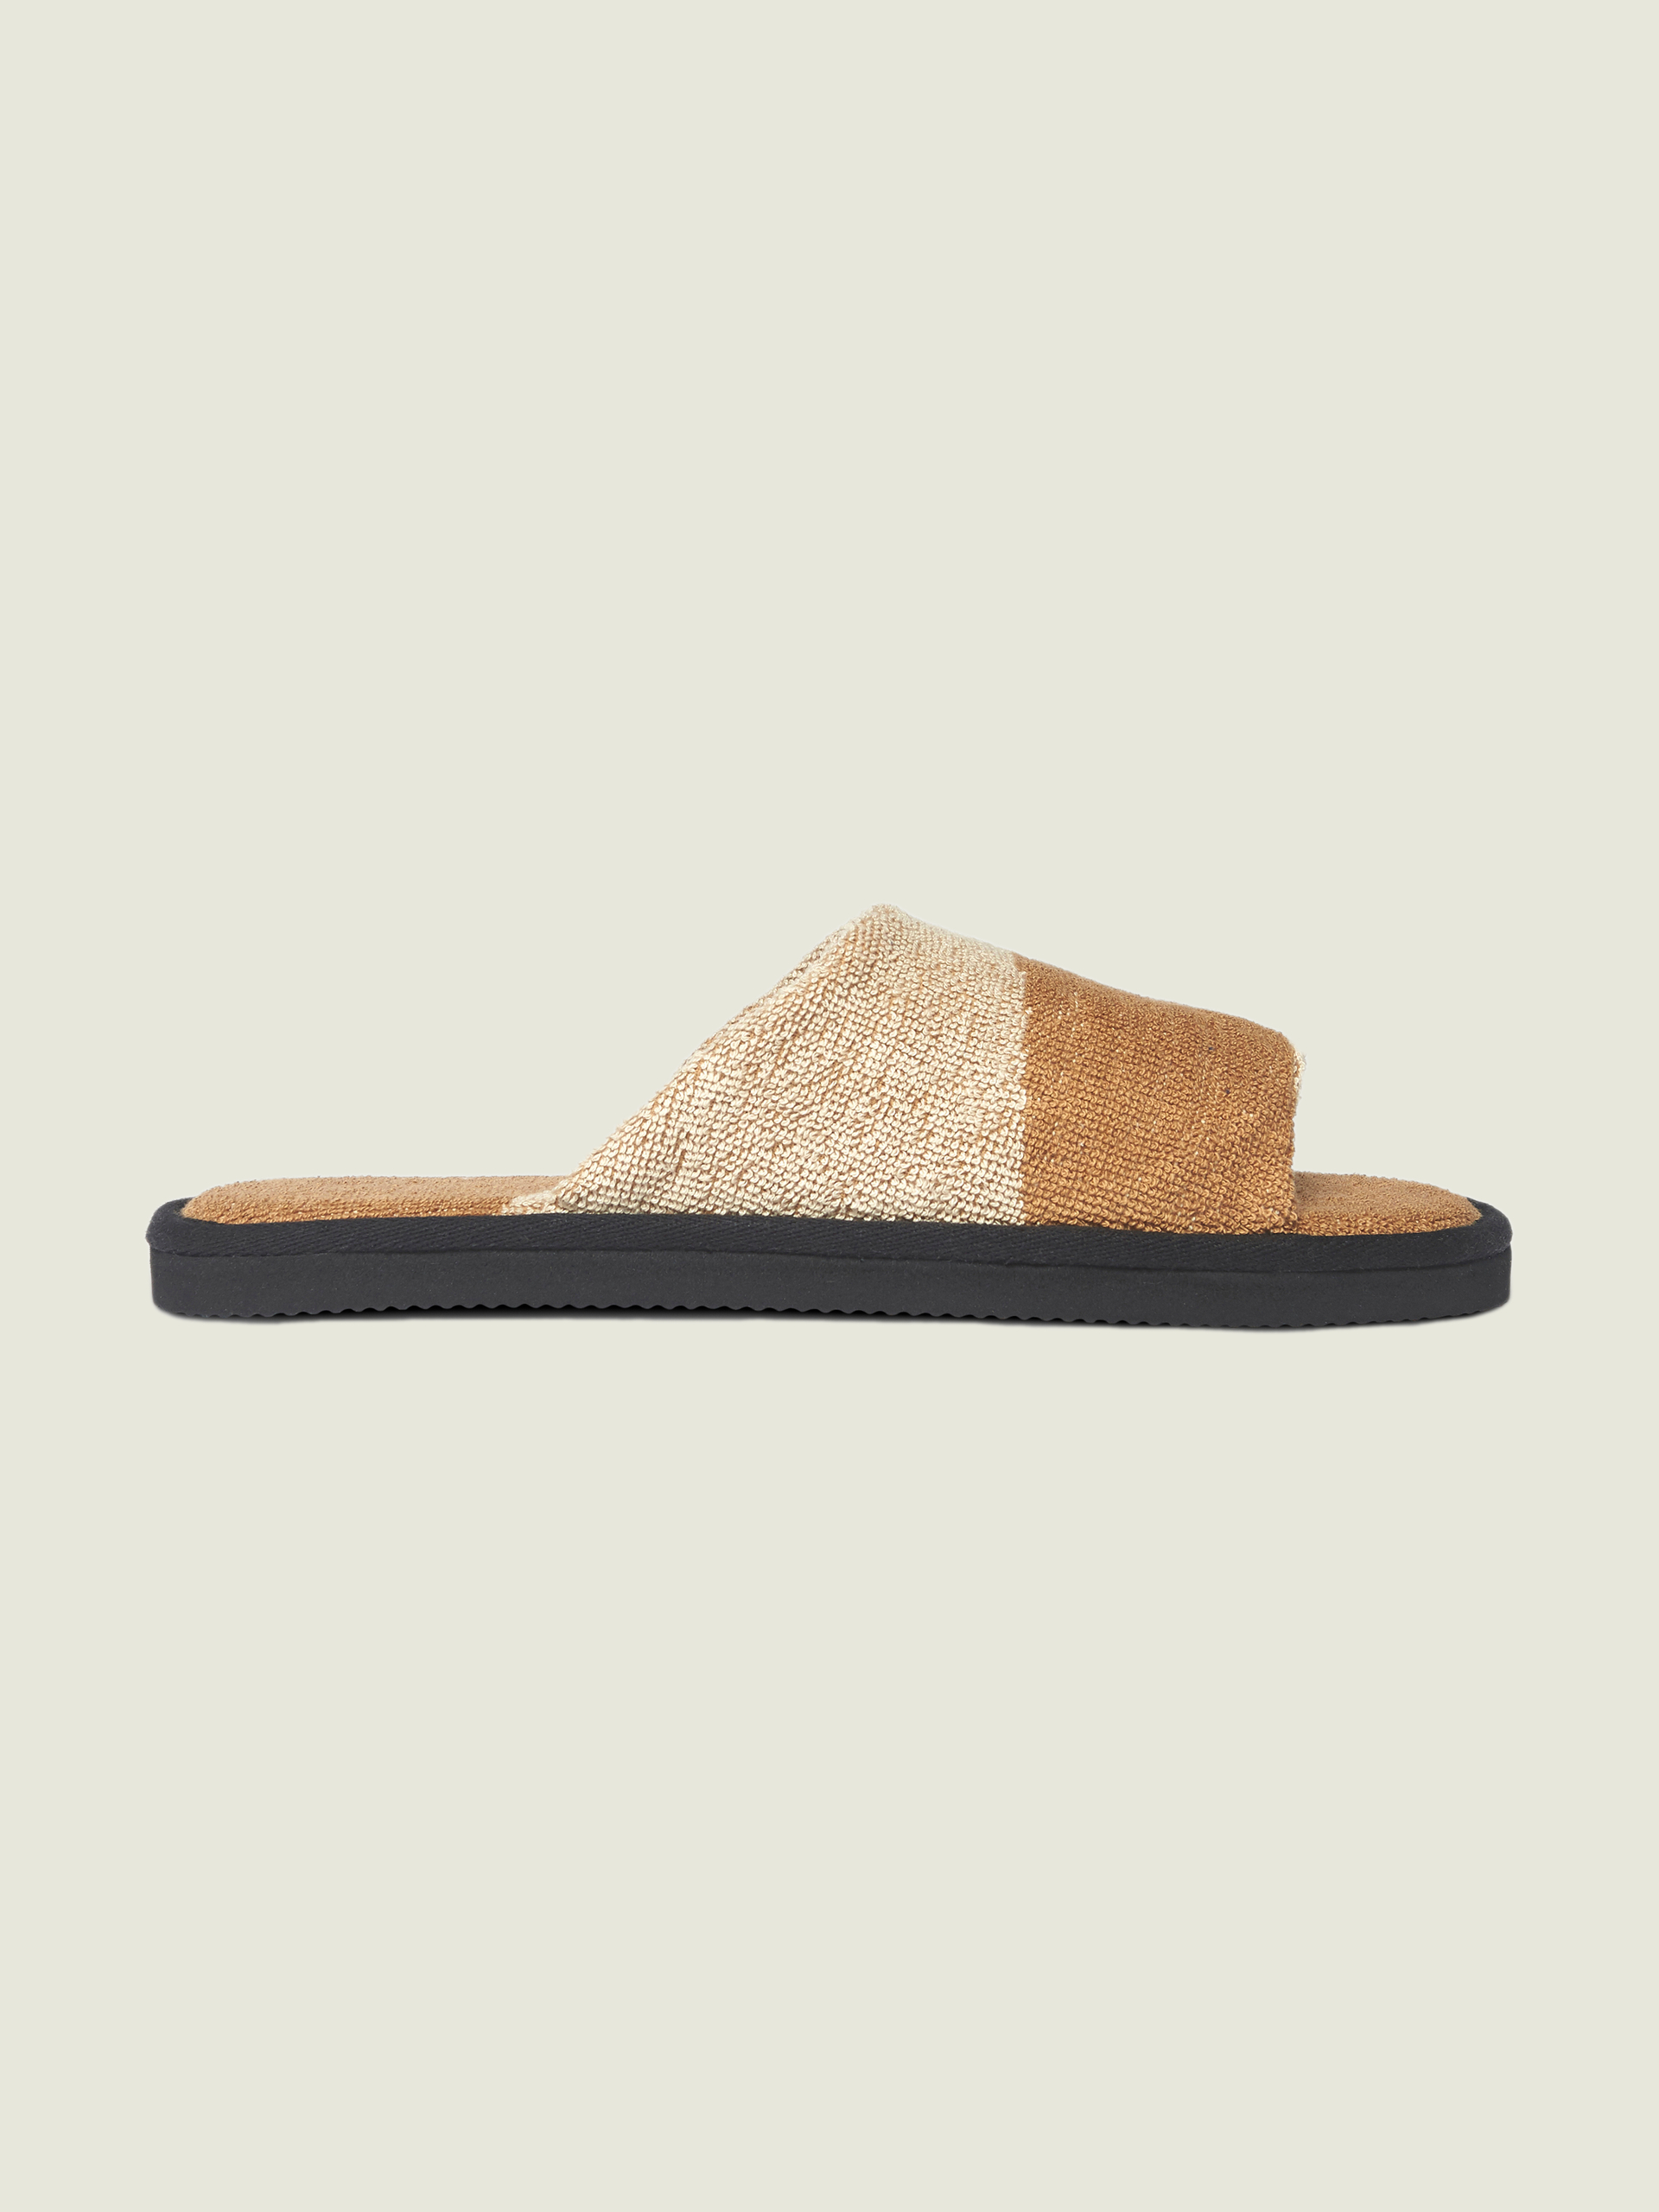 Desert Slippers